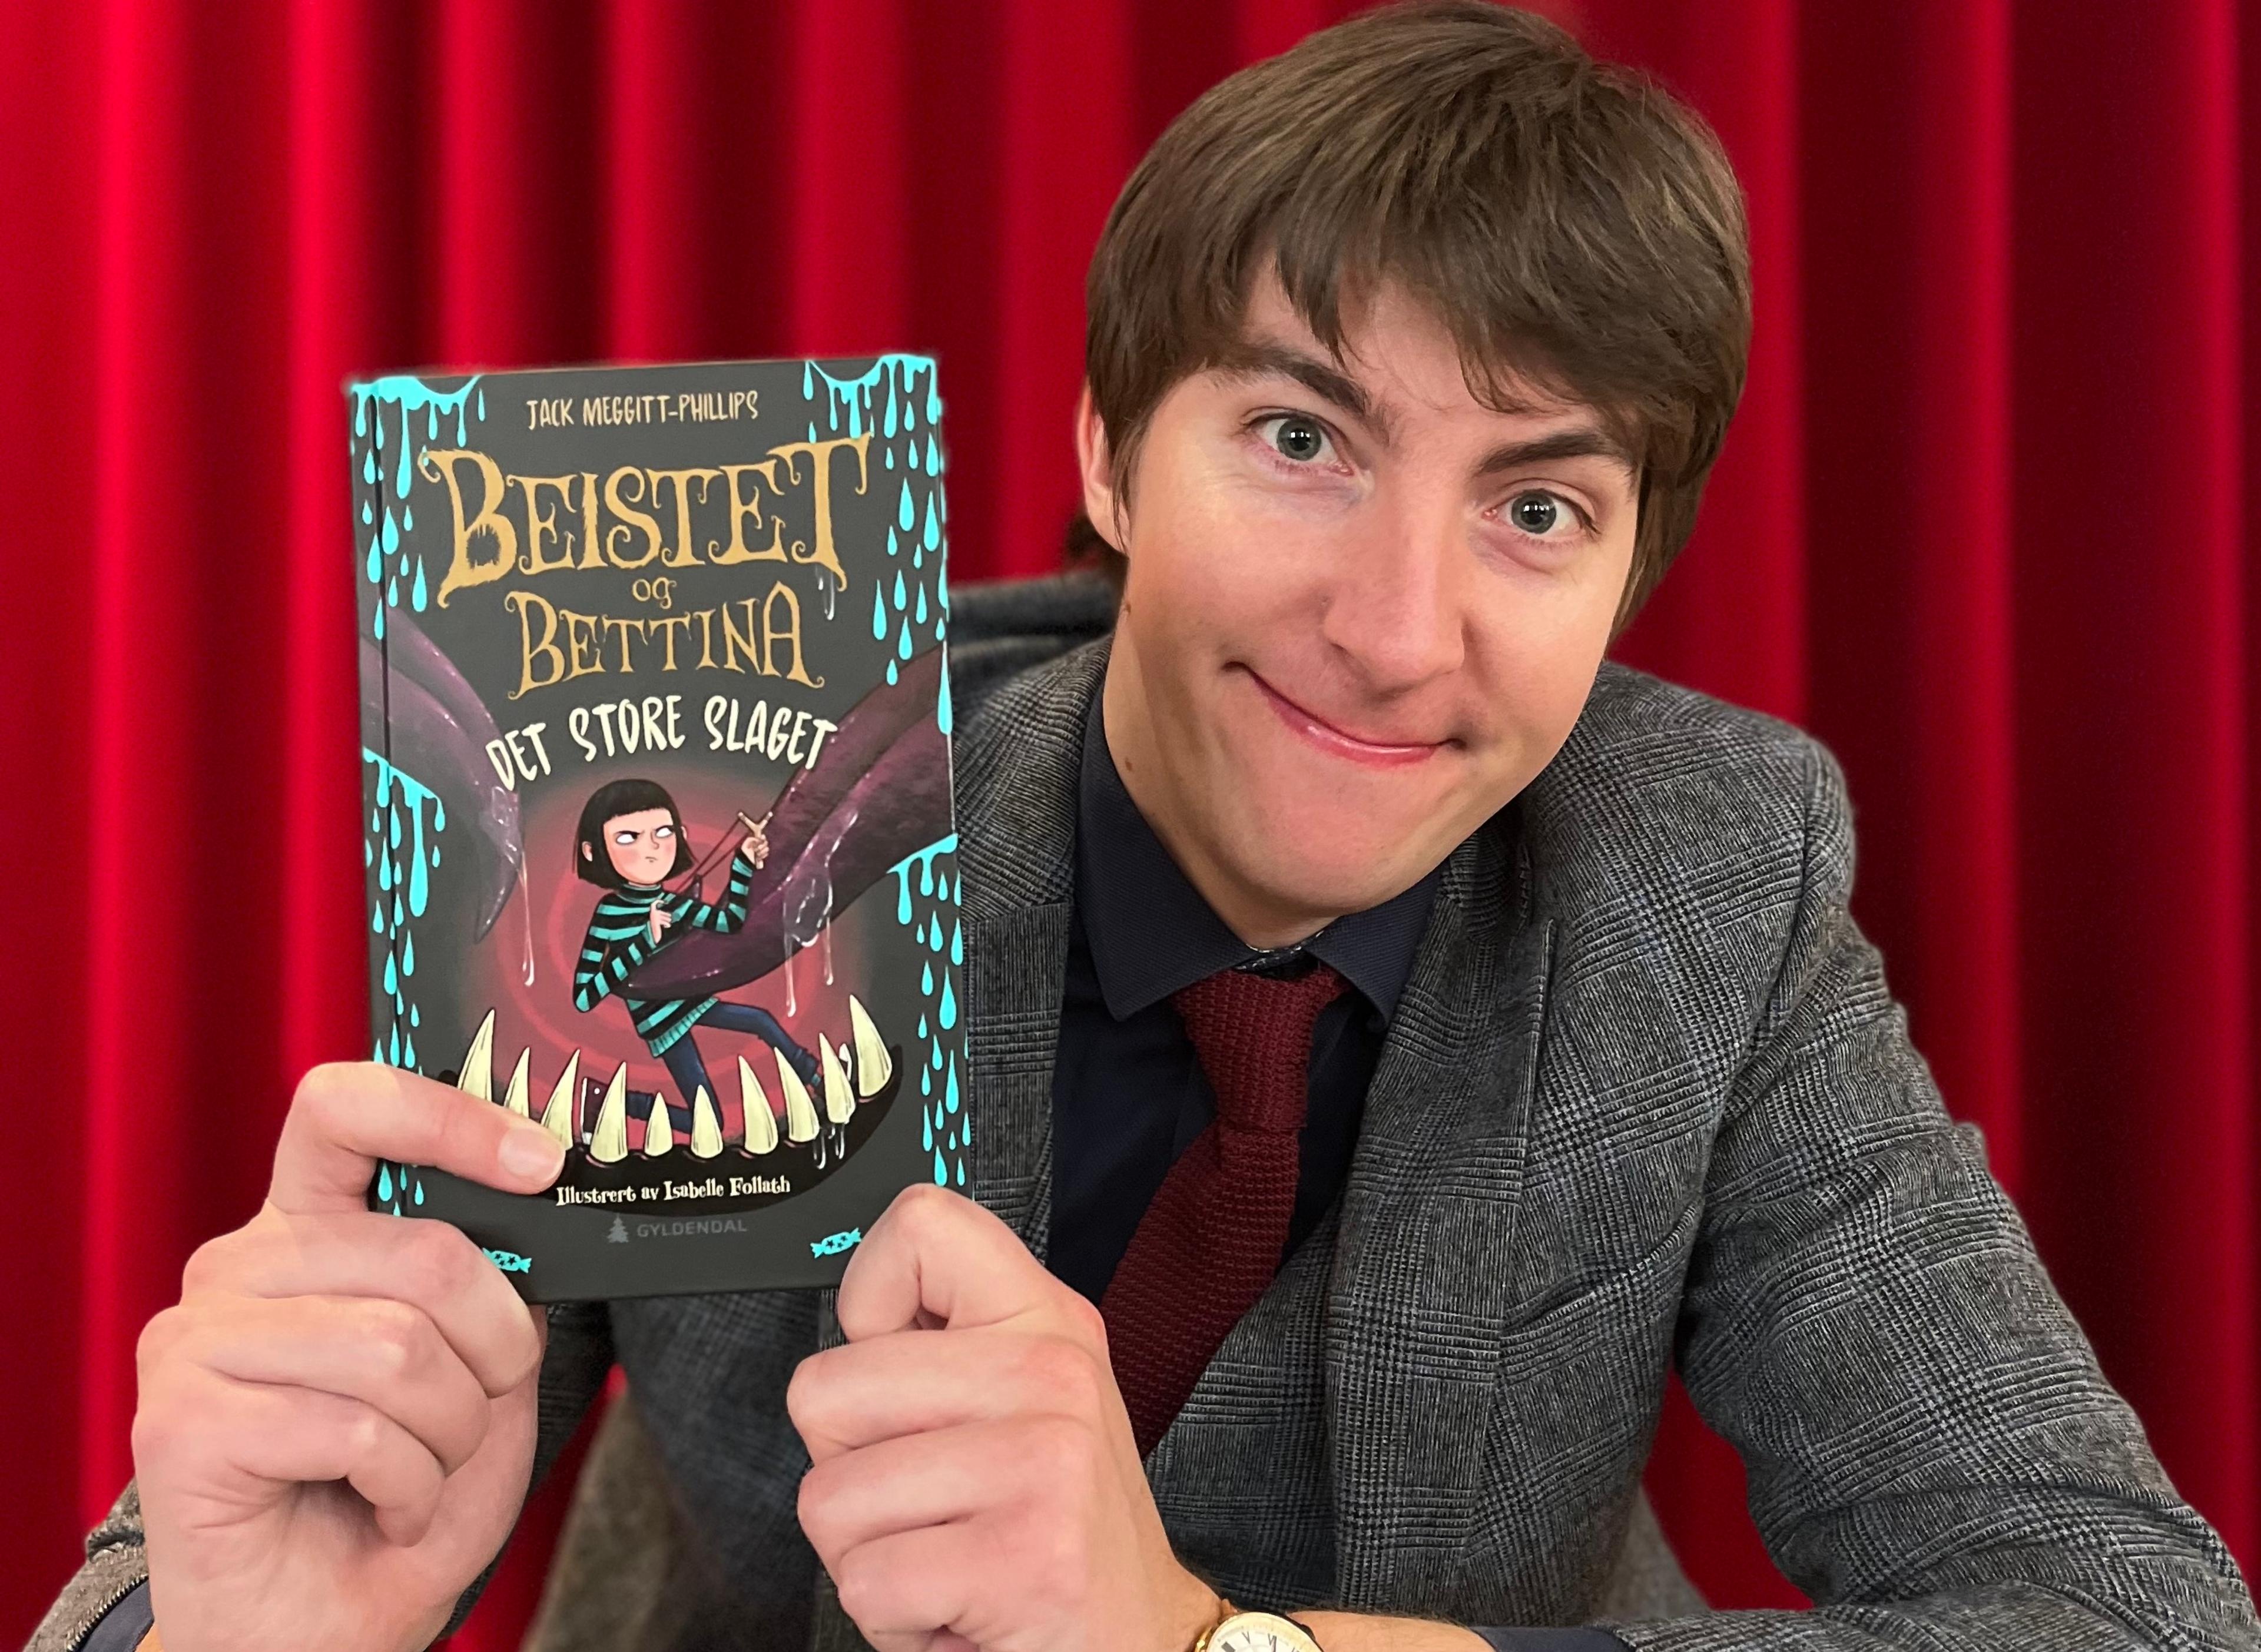 Forfatter Jack Meggit-Phillips har fått fans over hele verden med barnebokserien om Beistet og Bettina. 